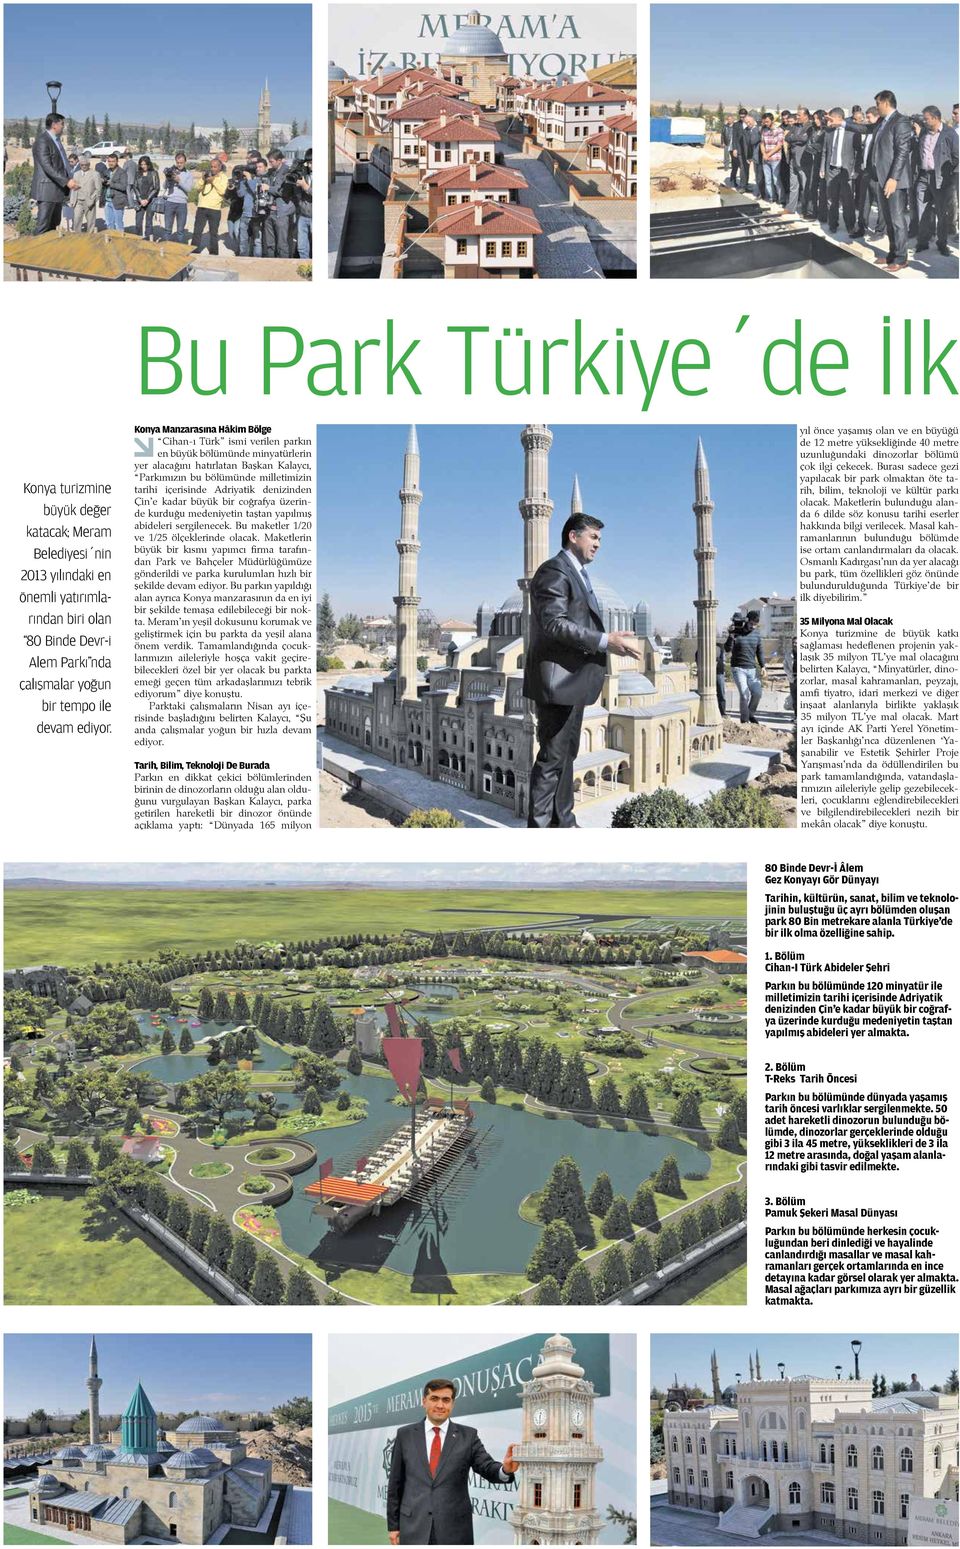 Konya Manzarasına Hâkim Bölge - Cihan-ı Türk ismi verilen parkın en büyük bölümünde minyatürlerin yer alacağını hatırlatan Başkan Kalaycı, Parkımızın bu bölümünde milletimizin tarihi içerisinde